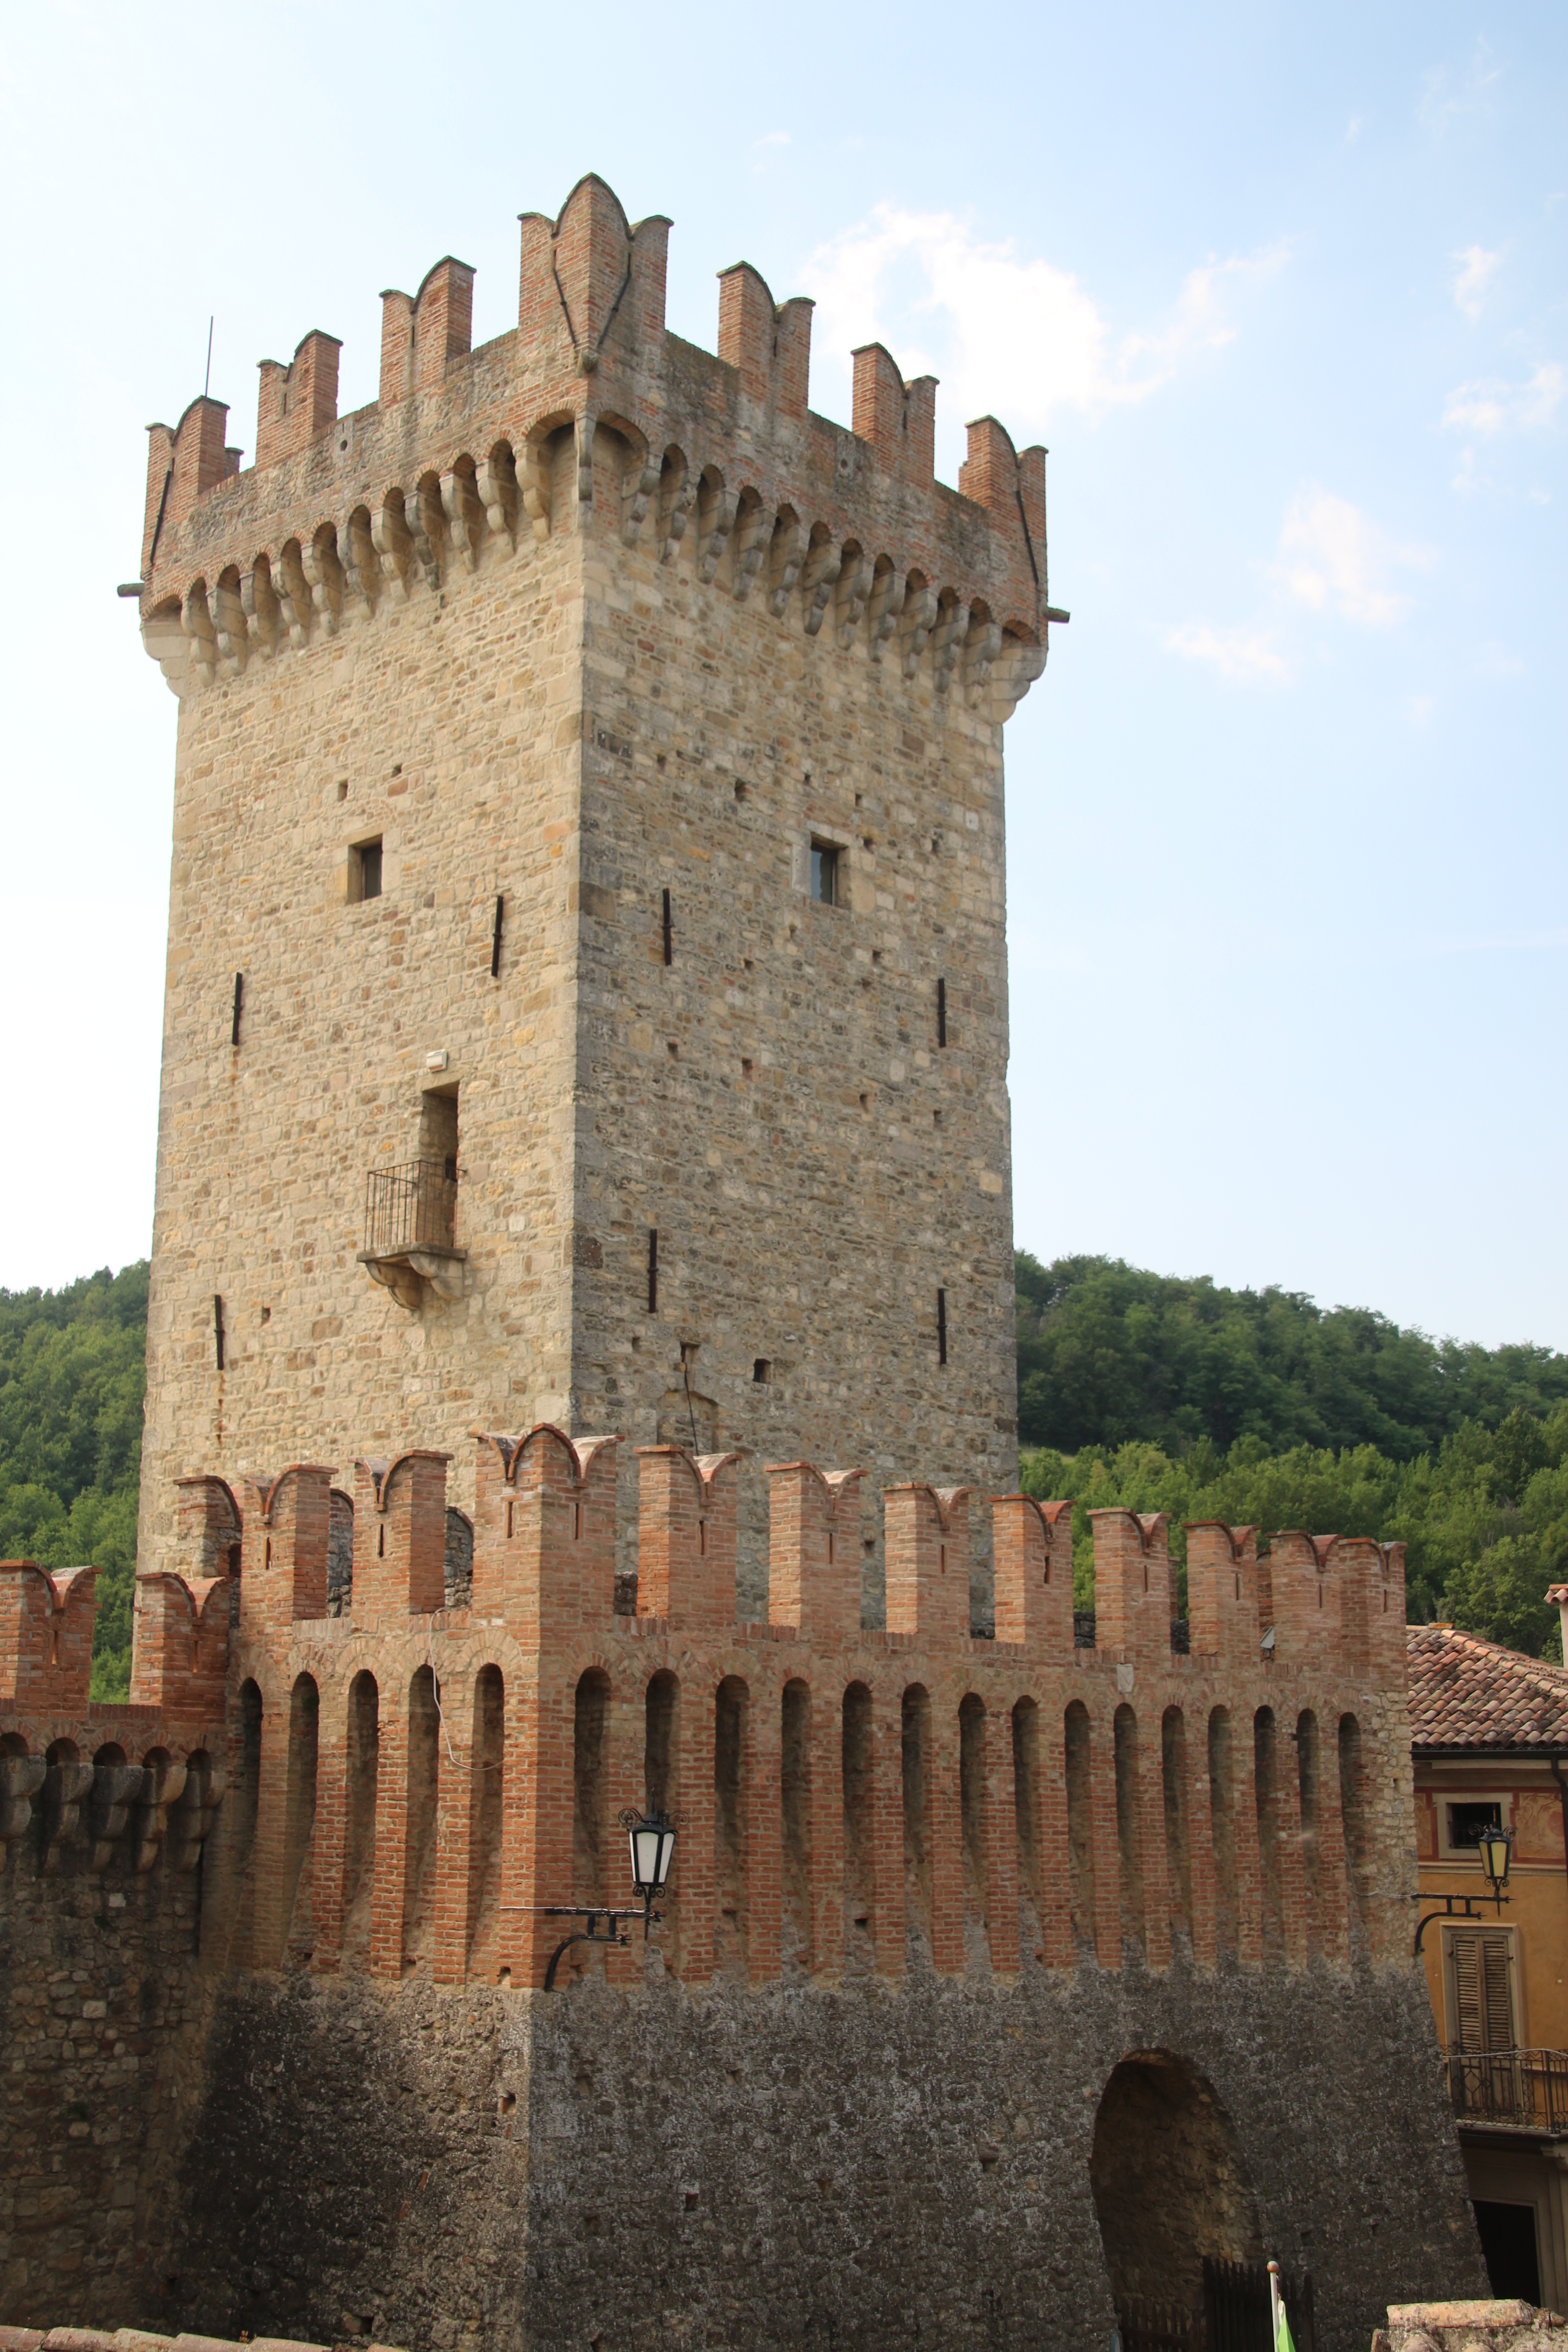 photo: https://upload.wikimedia.org/wikipedia/commons/5/5c/Castello_di_Vigoleno_%28Vernasca%29_35.jpg